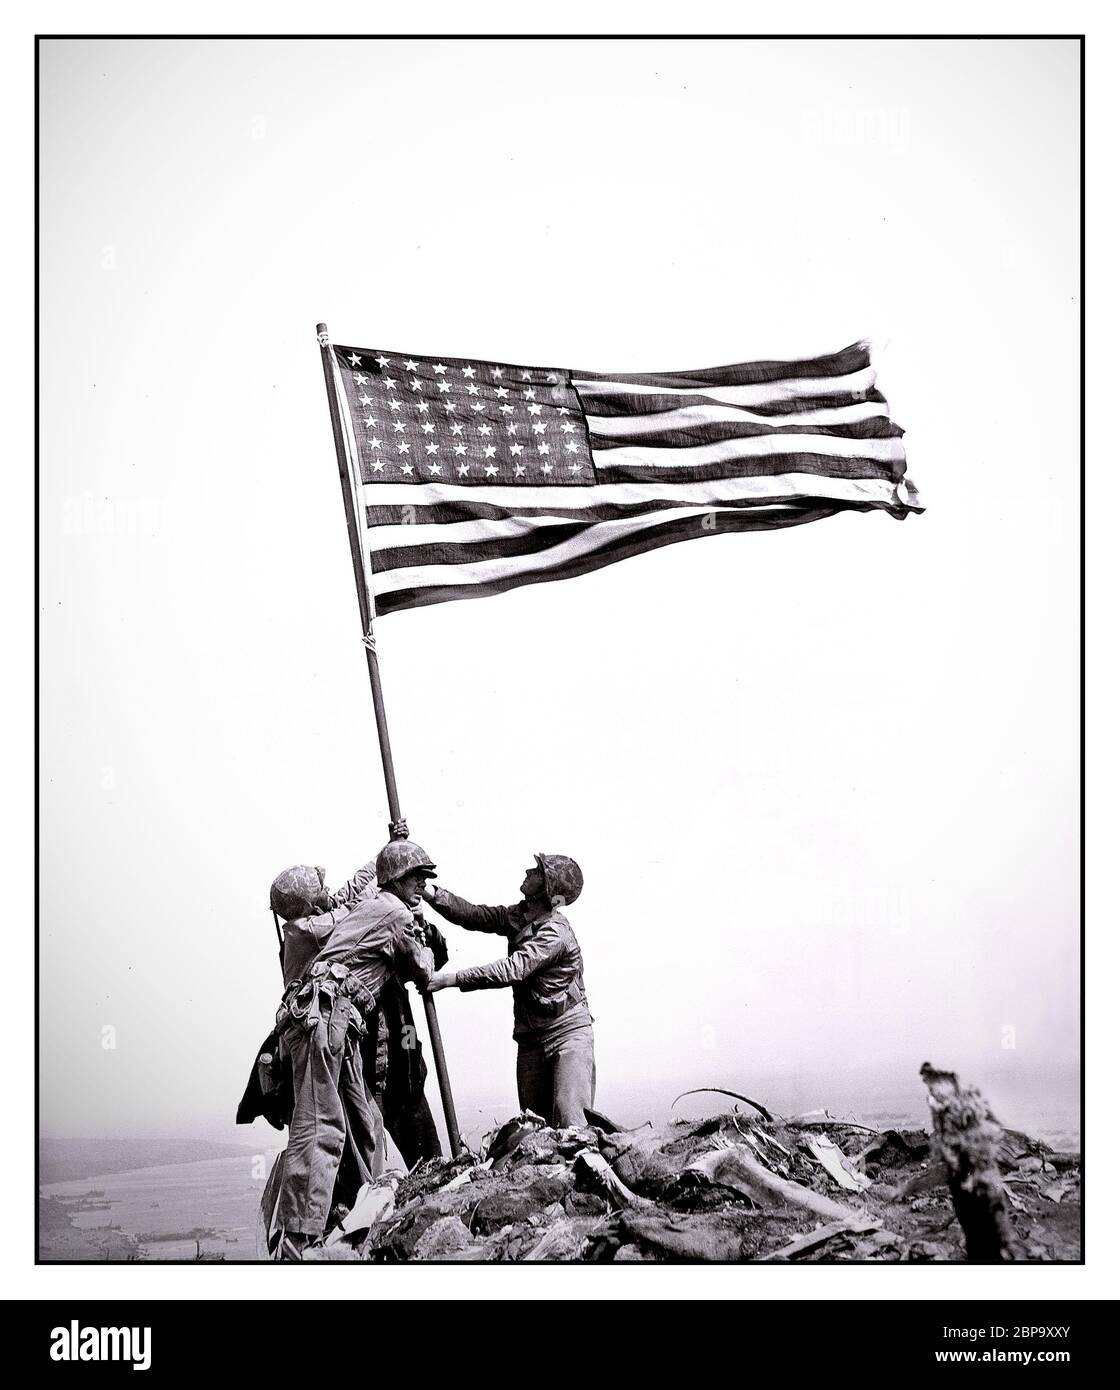 DRAPEAU IWO JIMA LEVANT LES marines américaines du 28e Régiment de la Cinquième Division élevez le drapeau américain après avoir capturé le Mt de 550 pieds. Suhibachi sur Iwo Jima, les plus grandes îles Volcano du Japon, le 23 février 1945 pendant la Seconde Guerre mondiale Banque D'Images